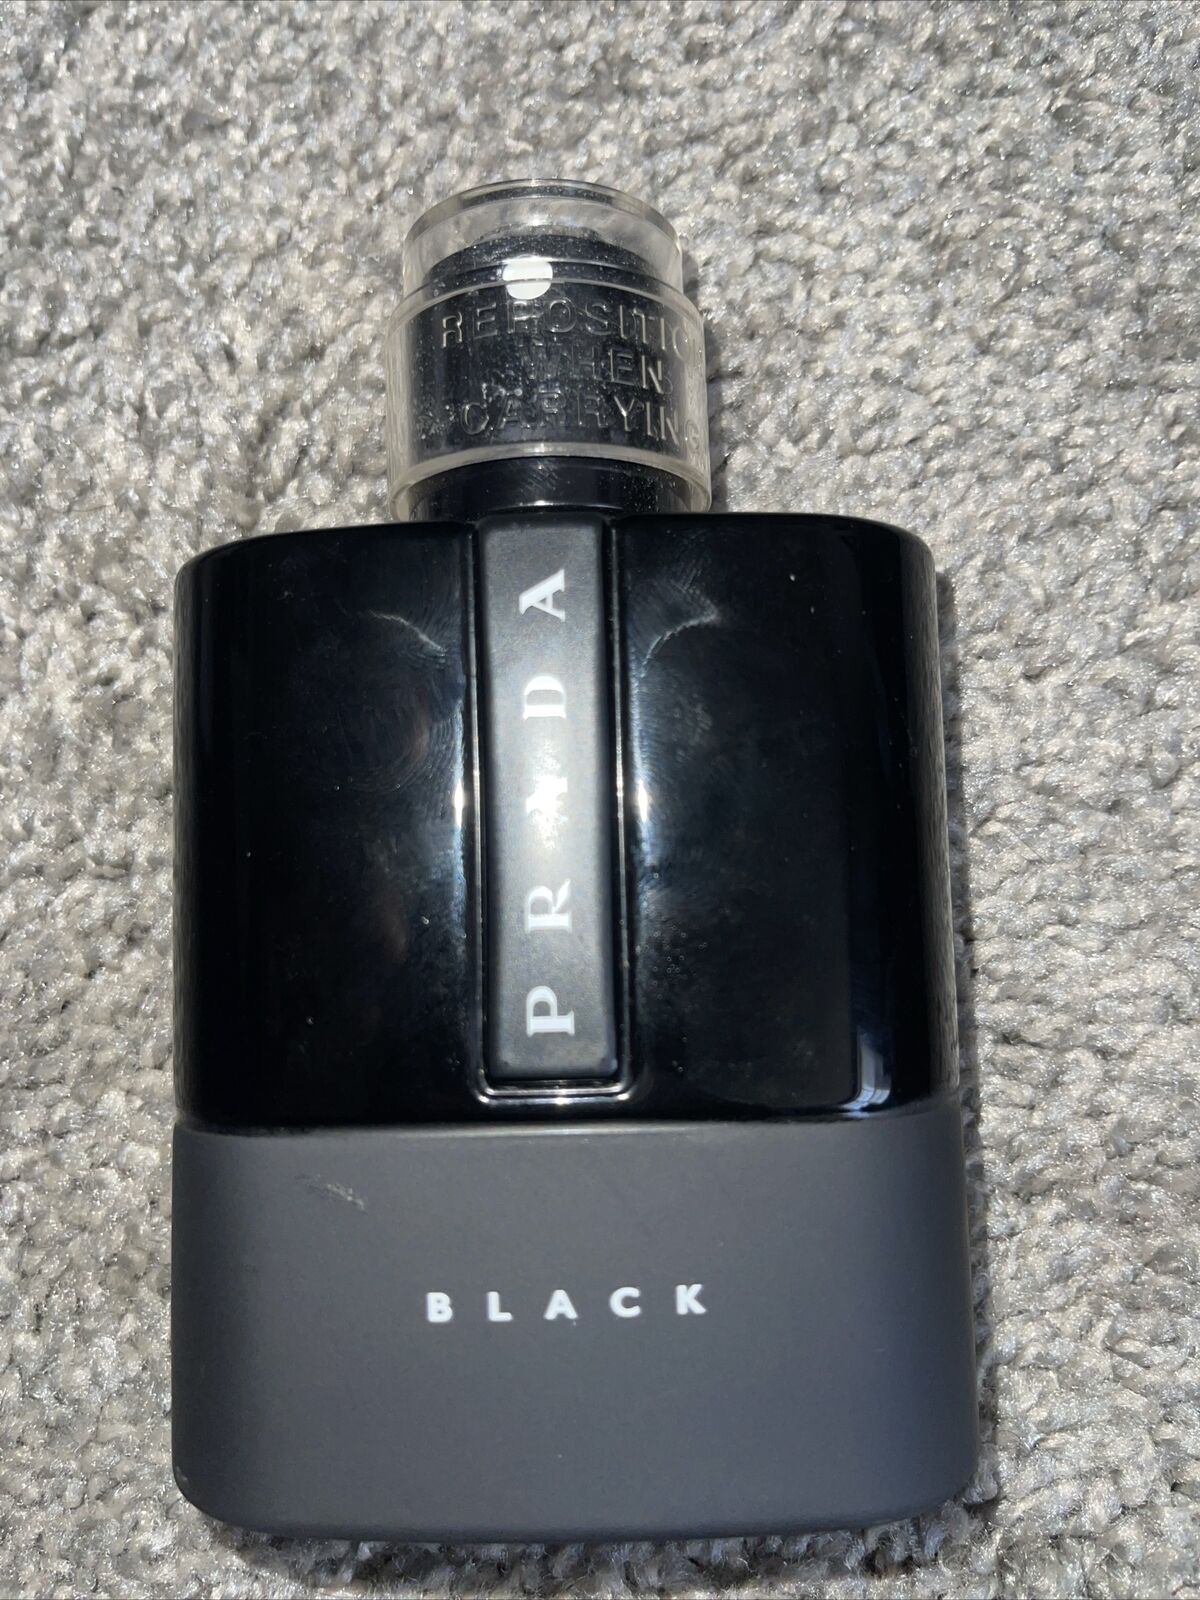 Prada Black Empty Cologne Perfume Bottle 100ml Eau De Parfum